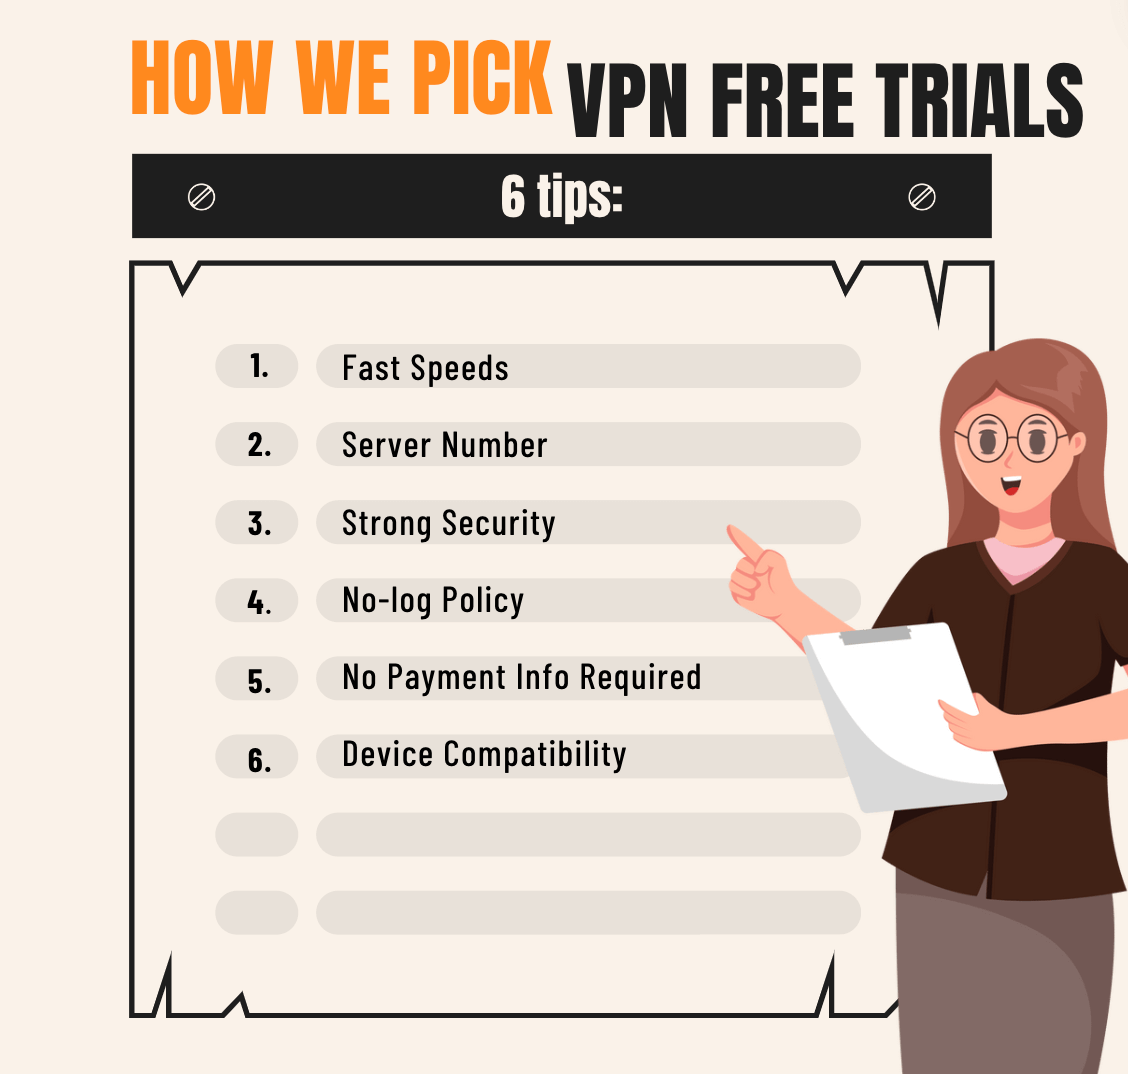 How we pick VPN free trials